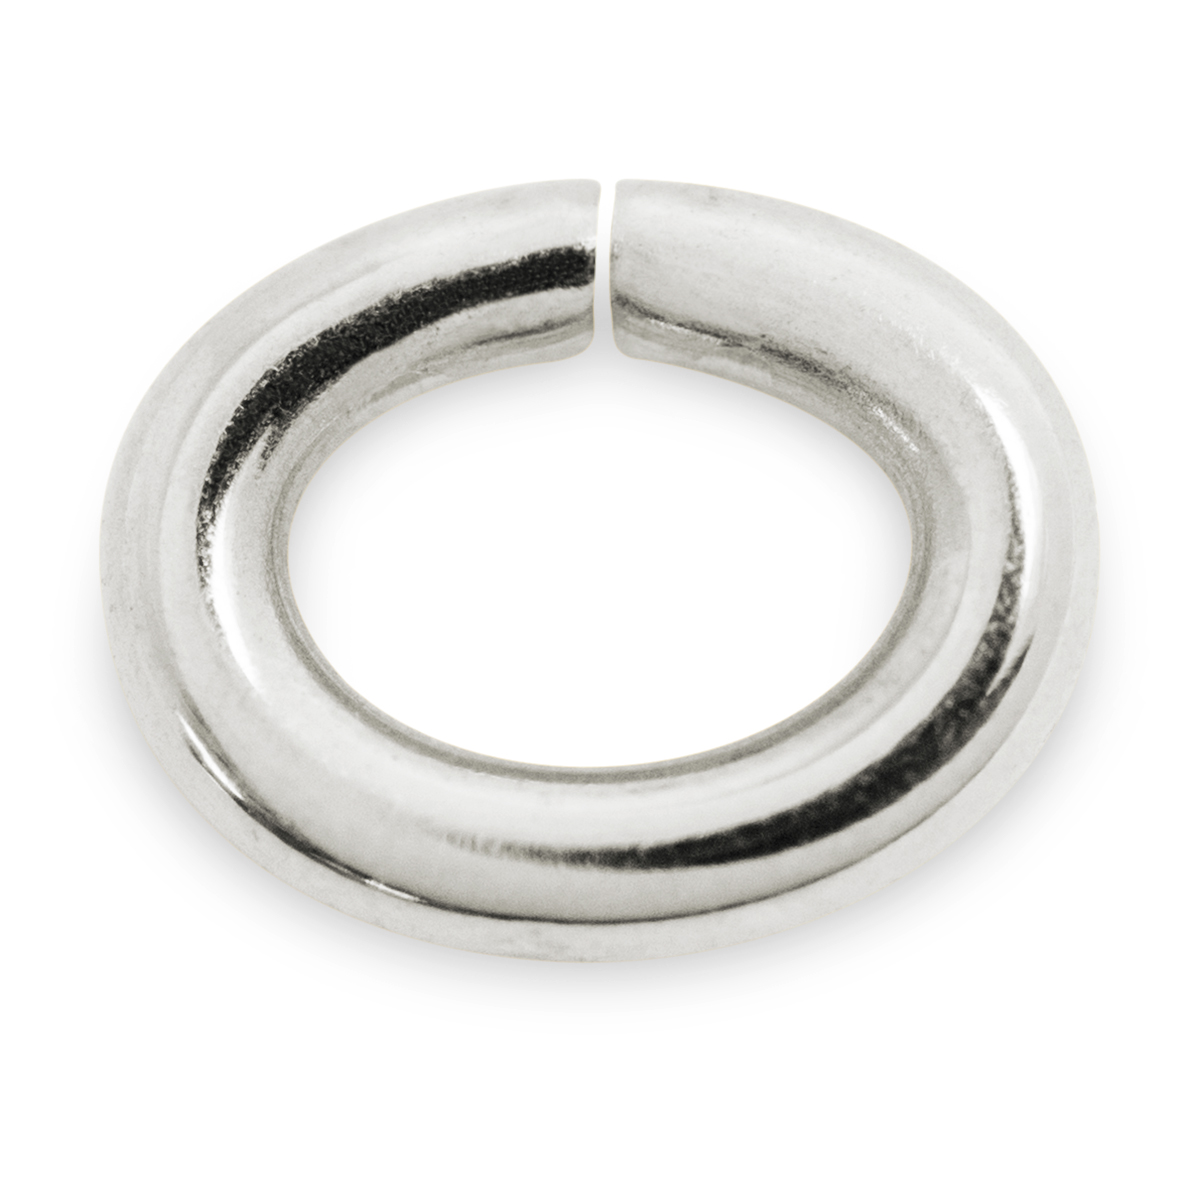 Binderinge, oval, 925/- Silber, Ø 5 mm, Stärke 0,9 mm